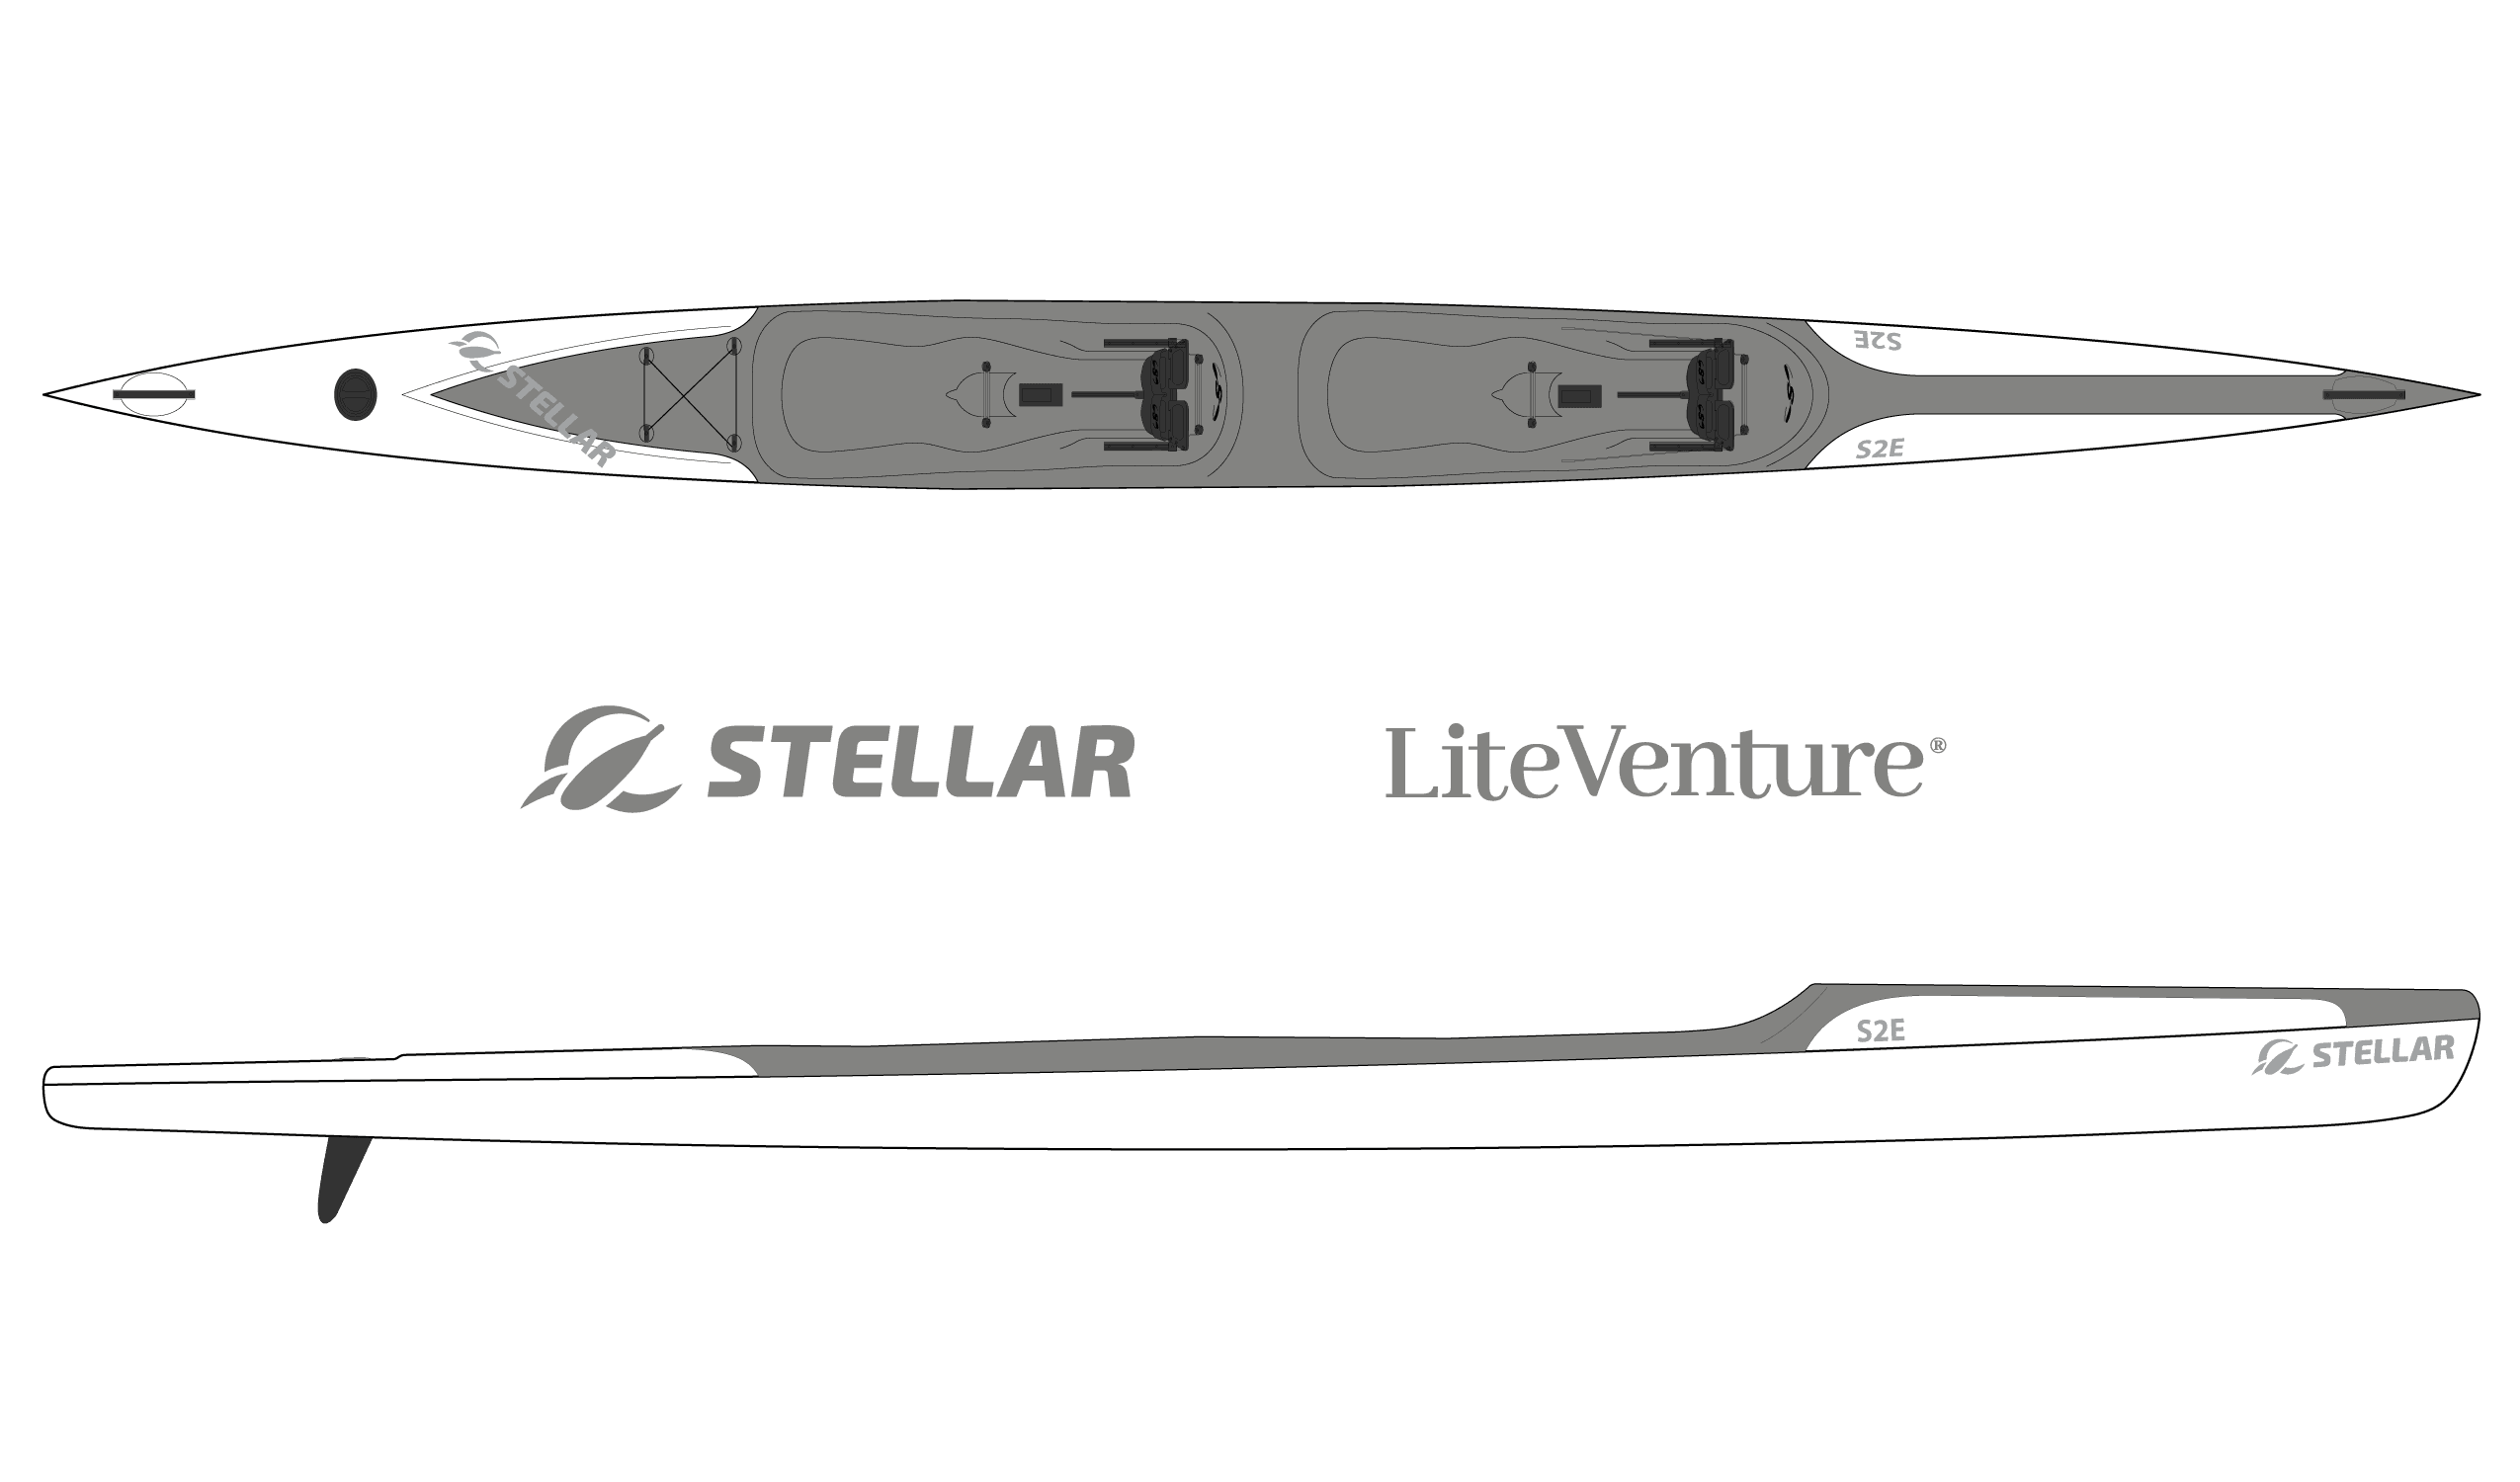 Produktbild von Kajak " S2E Tandem Excel-weiß grau " der Marke STELLAR Lightweight für 3490.00 €. Erhältlich online bei Lite Venture ( www.liteventure.de )